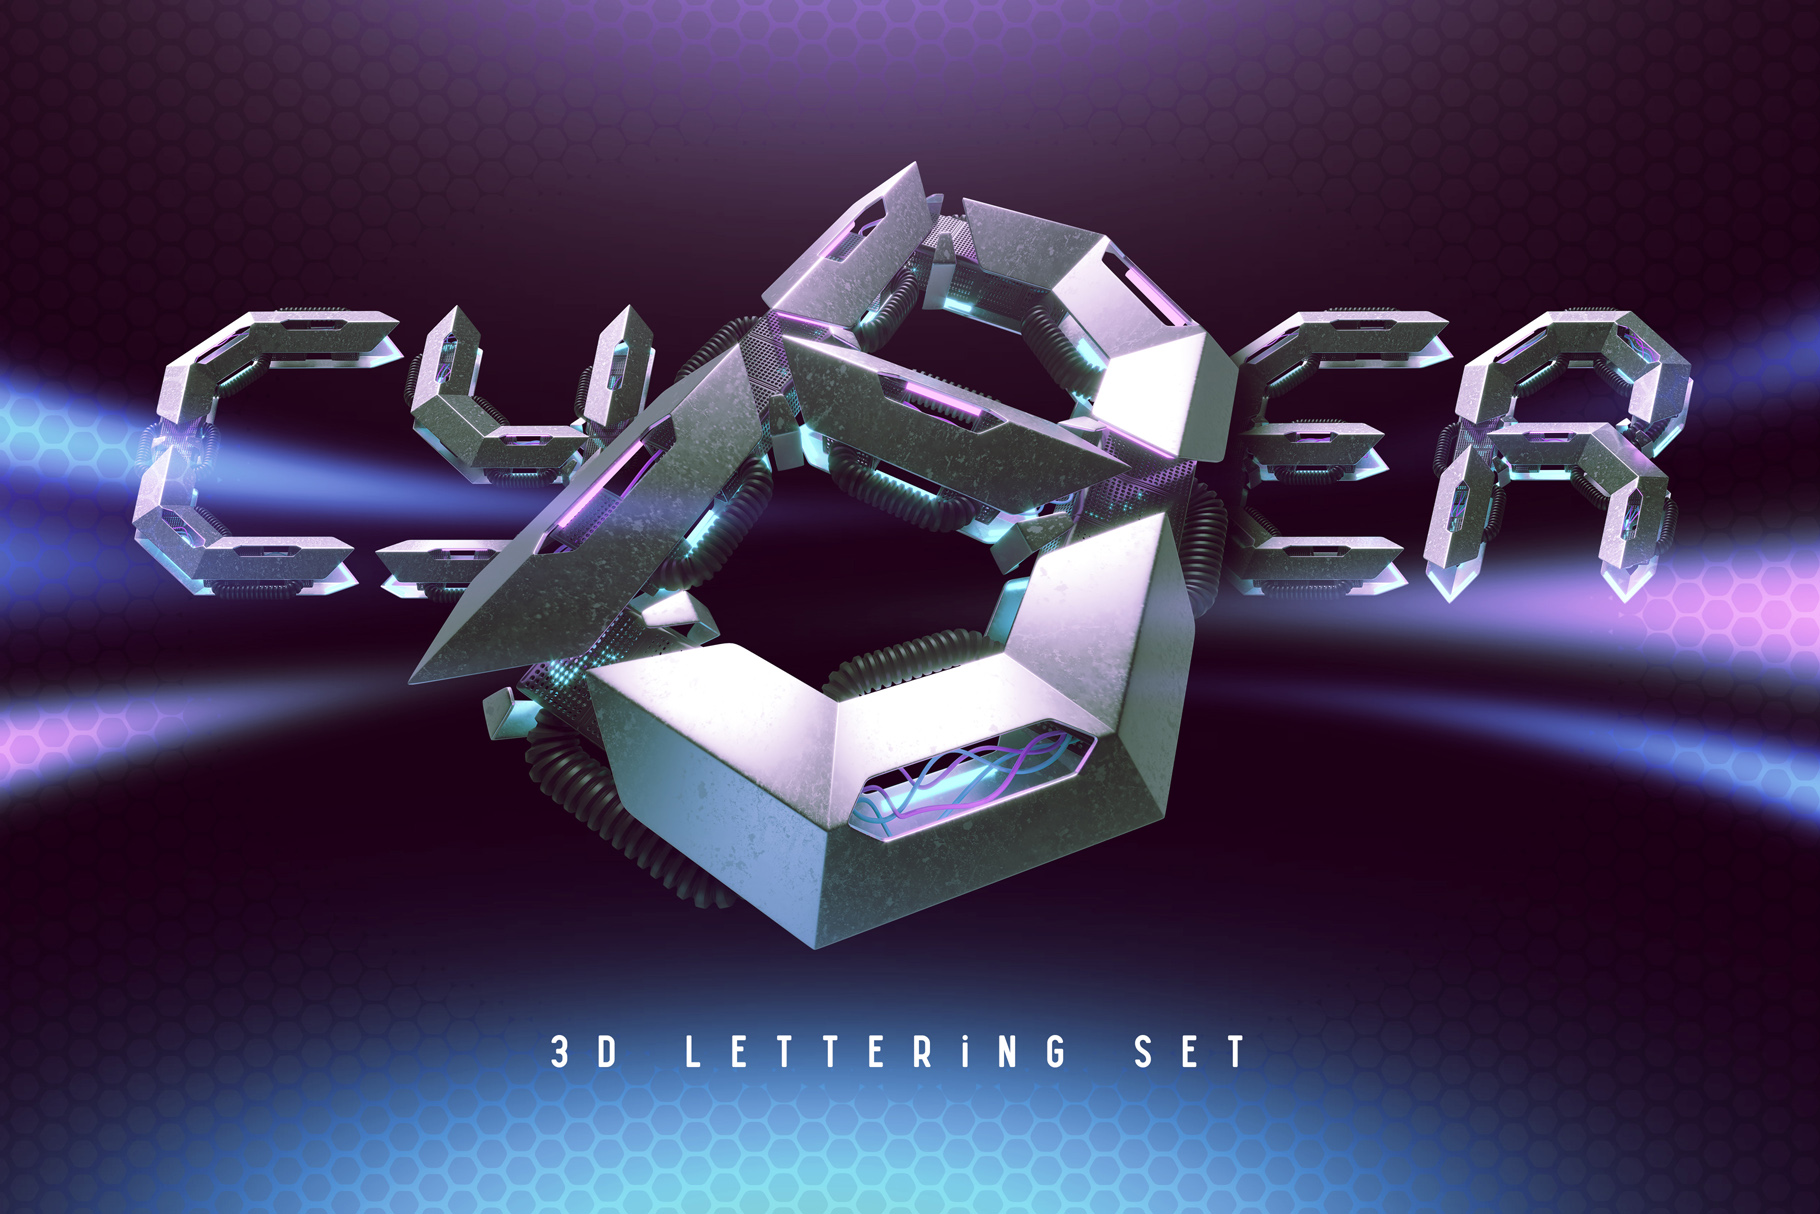 Cyber 3d Lettering Set facebook image.